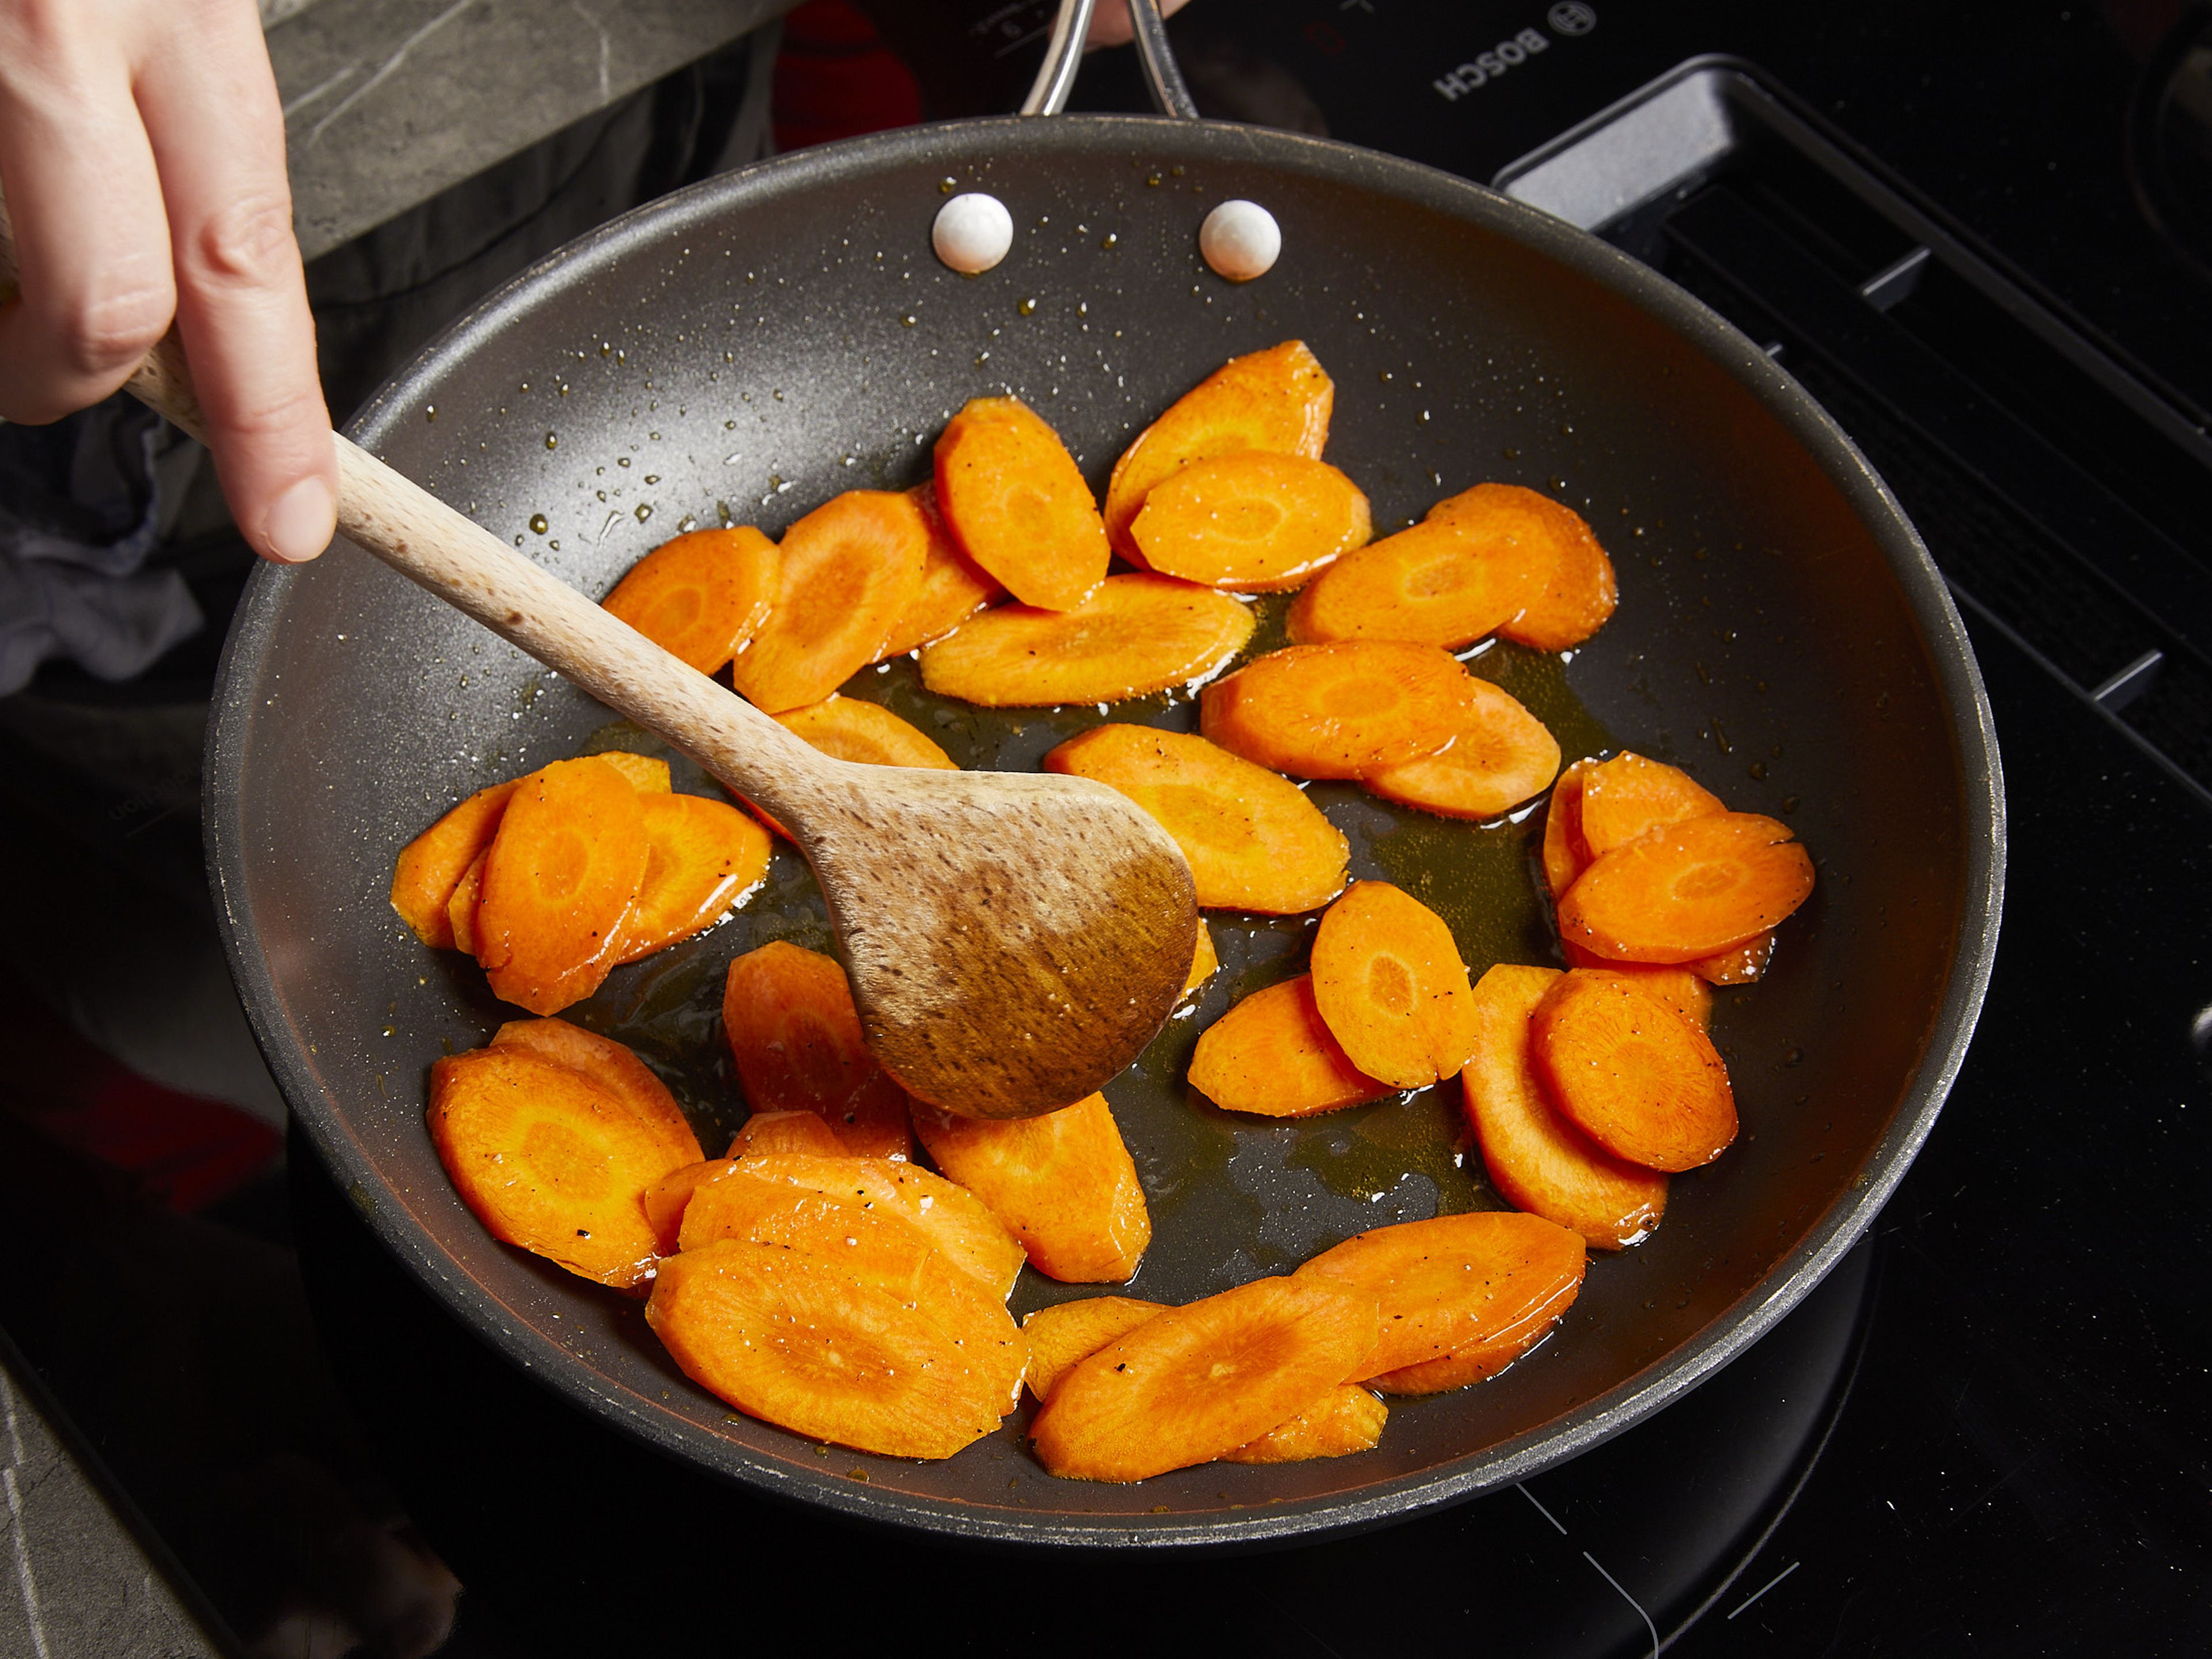 In der Zwischenzeit das restliche Öl in einer Pfanne erhitzen und die Karottenscheiben darin bei mittlerer Hitze ca. 3–5 Min. braten, dann mit Salz würzen. Das Pesto mit der Sahne in einer kleinen Schüssel verrühren. Parmesan reiben und etwas zum Garnieren beiseitestellen.